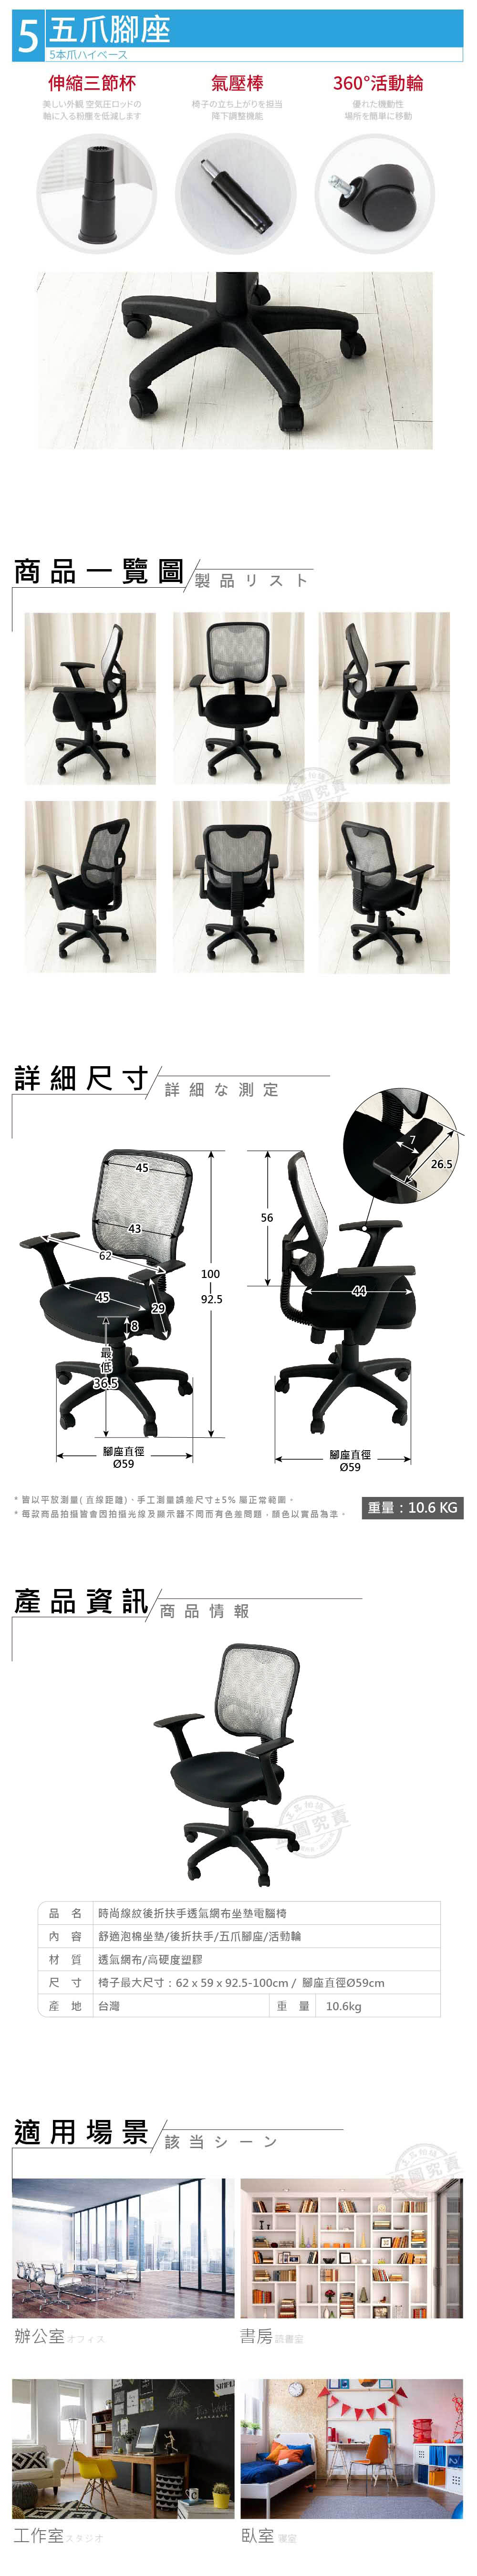 ADS 高級時尚線紋後折扶手透氣網布坐墊電腦椅/辦公椅(銀灰